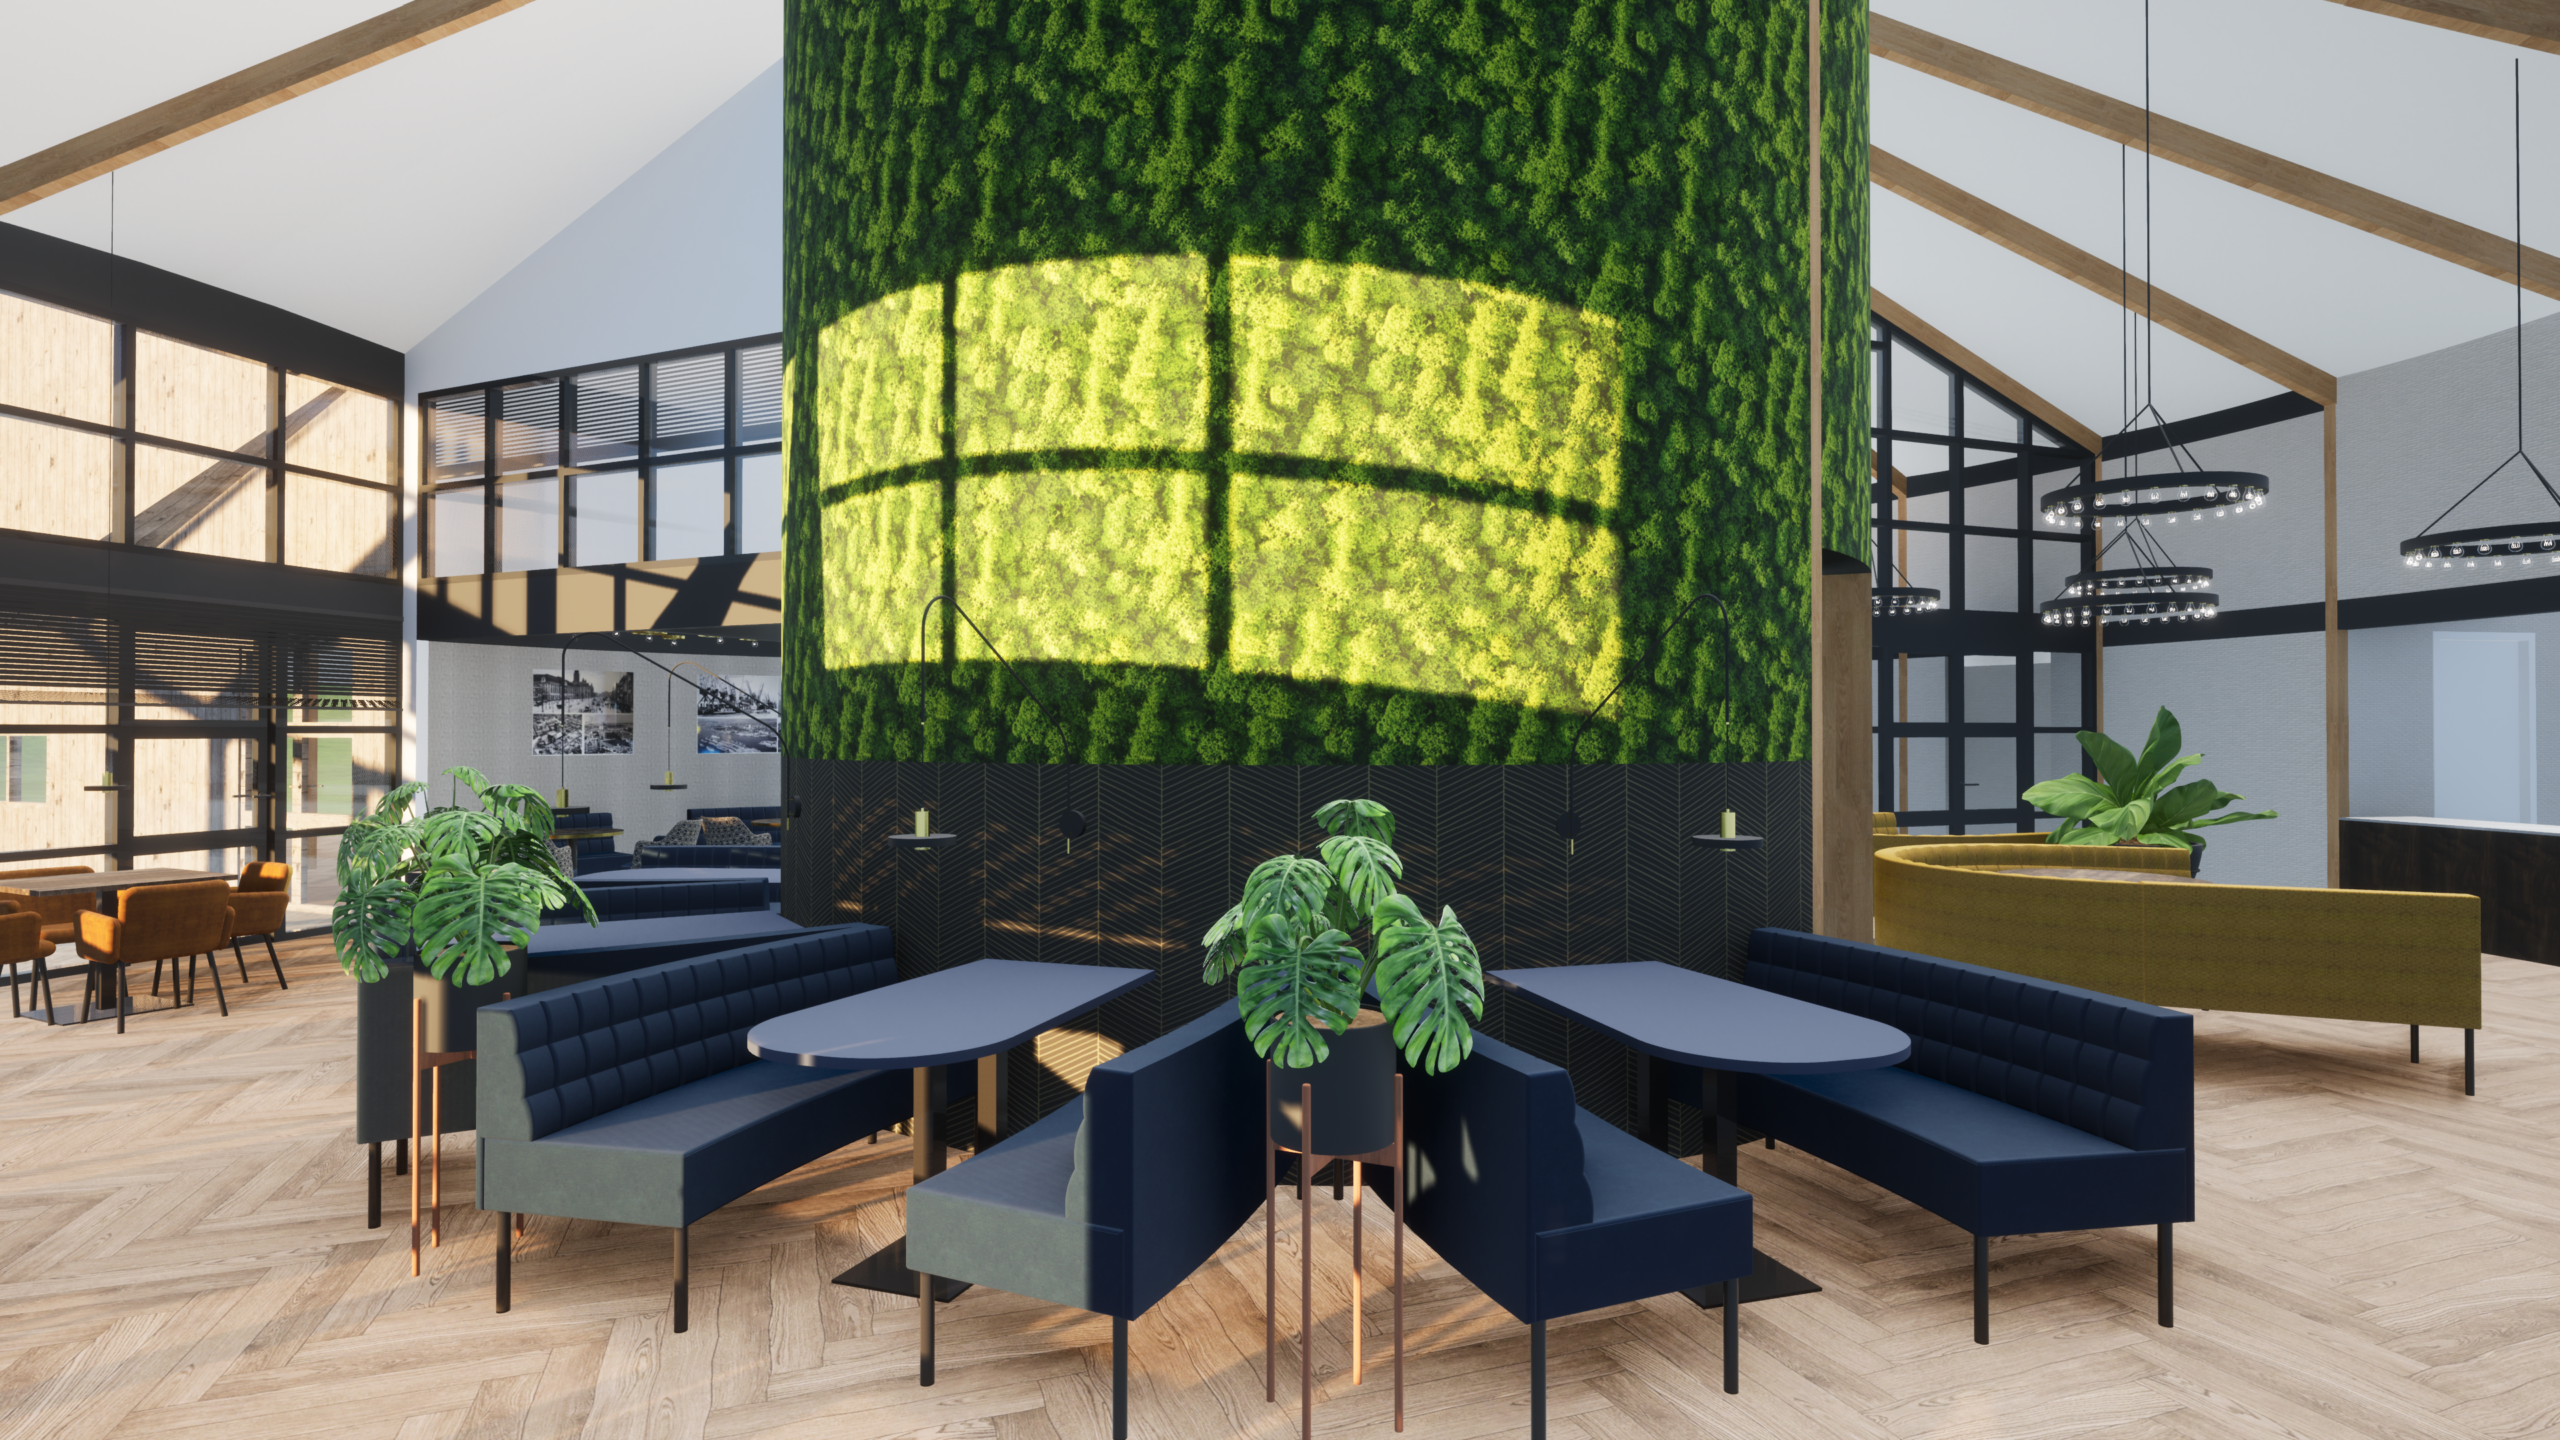 De Hooge Rotterdamsche interieurontwerp restaurant verlichting zitjes moswand